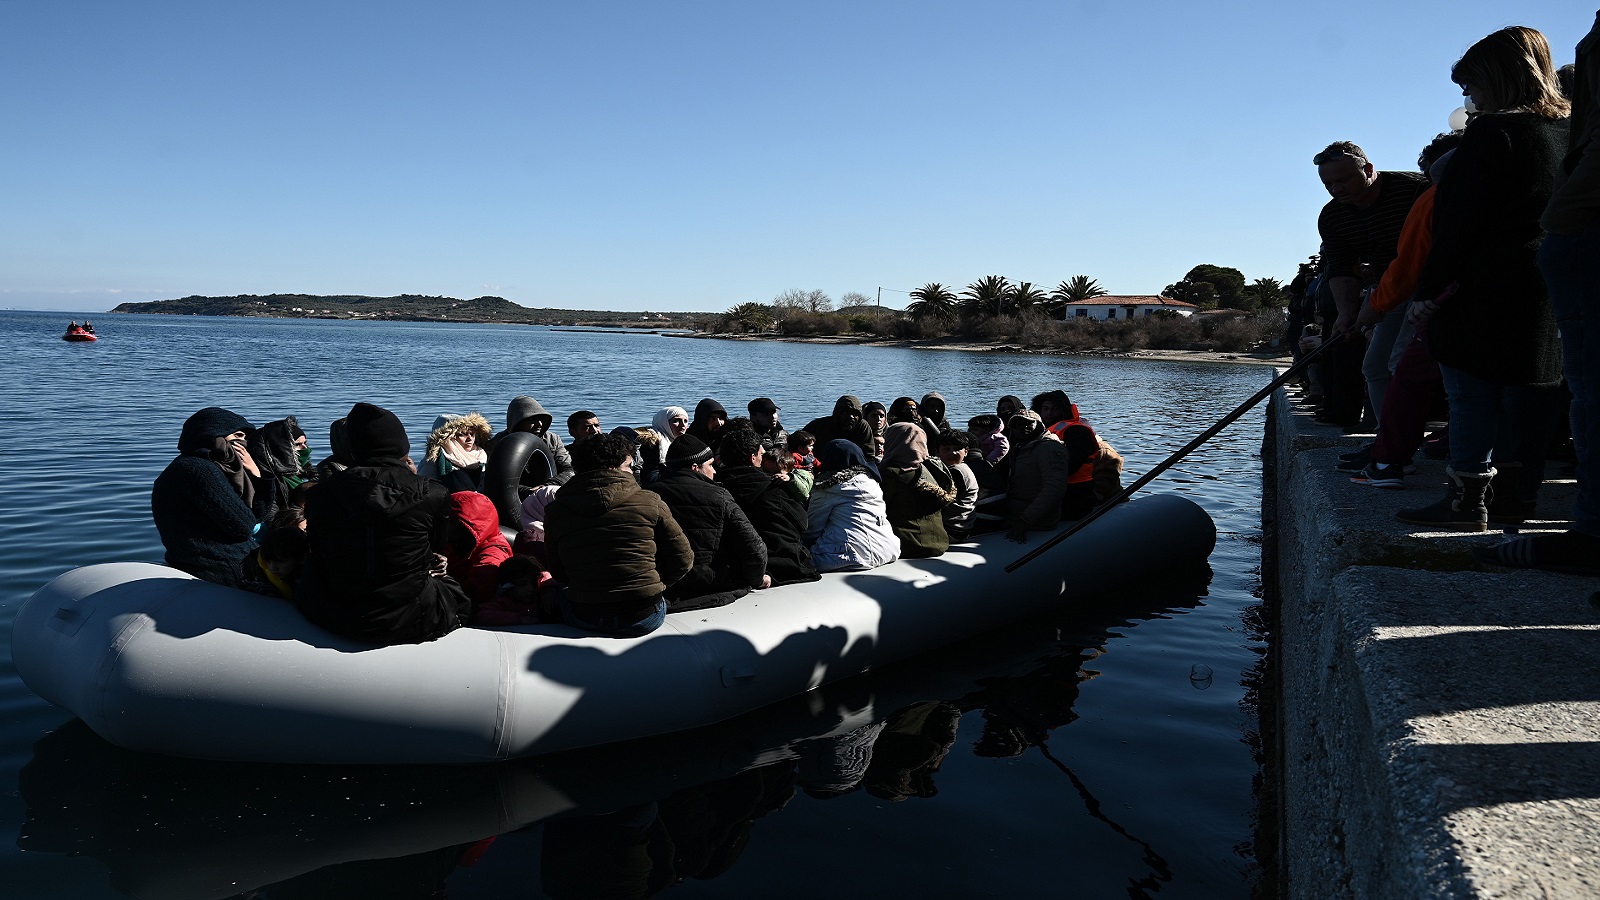 الهجرة بحراً: 59 قارباً في سنة إلى مصير مجهول